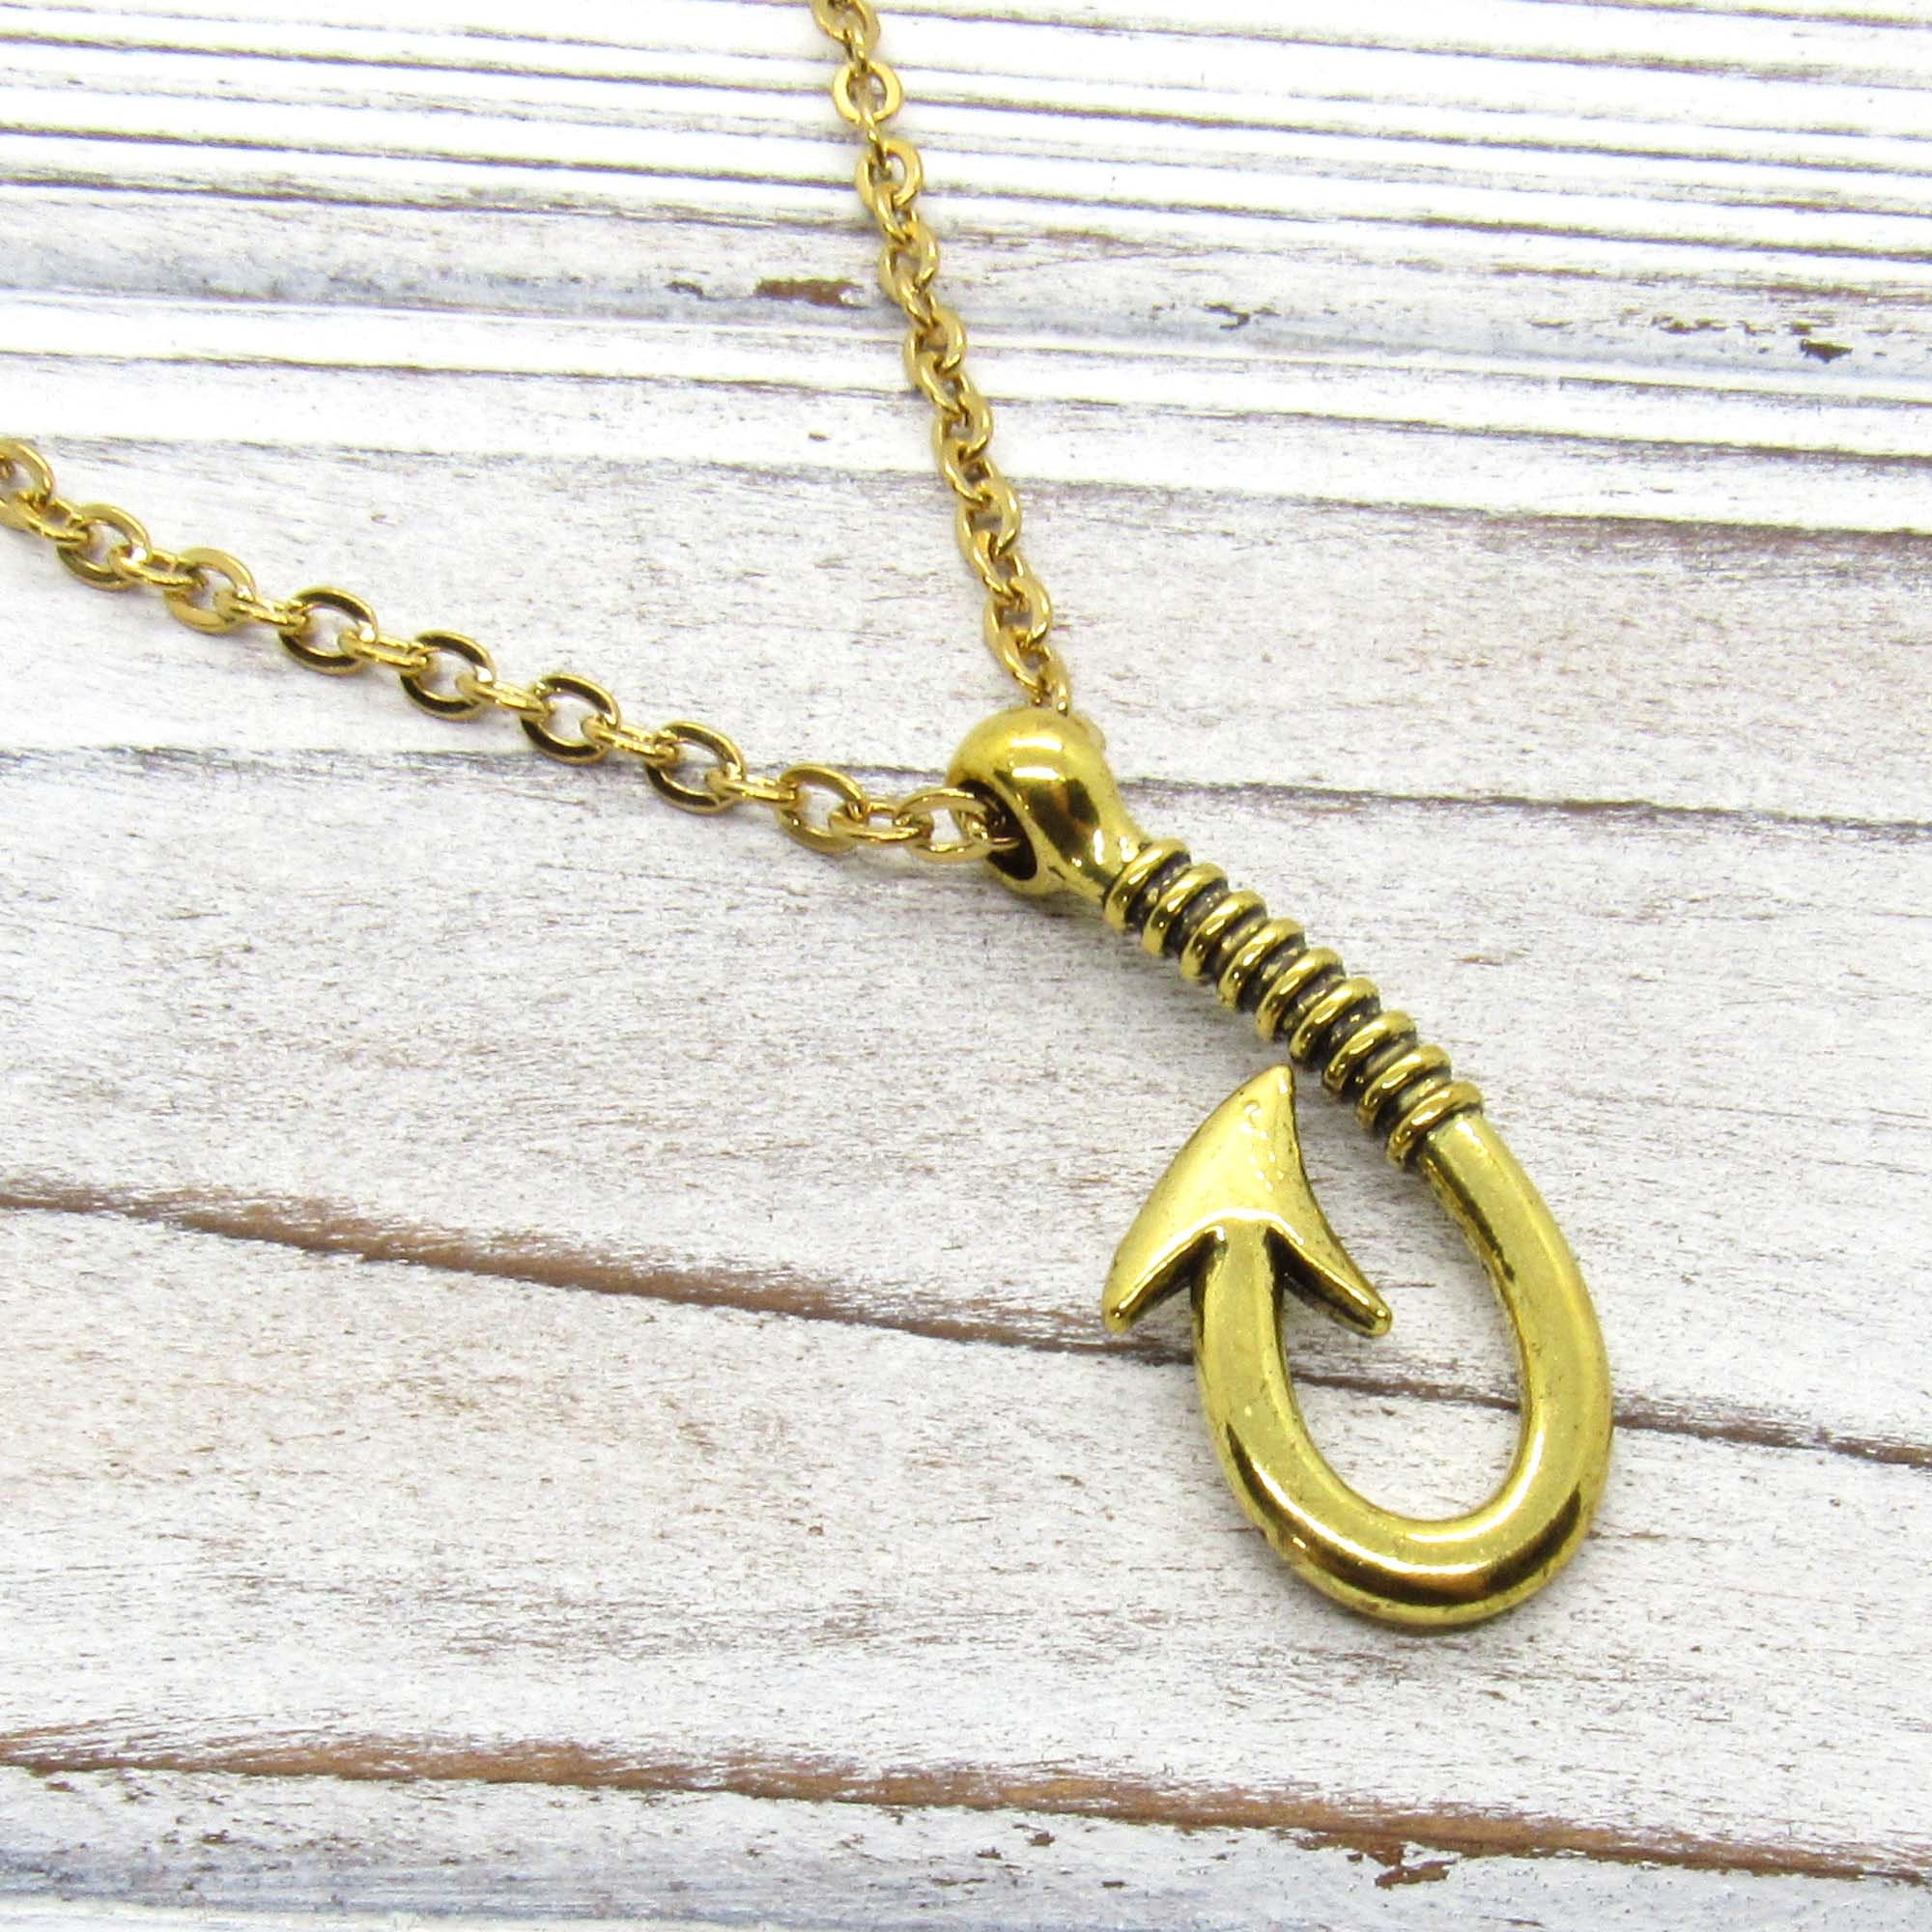 Antique Gold Tone Fish Hook Pendant Necklace, Fish Hook Charm Necklace,  Fisher Jewelry, Gift for Men, Men's Jewelry, Women's Jewelry 